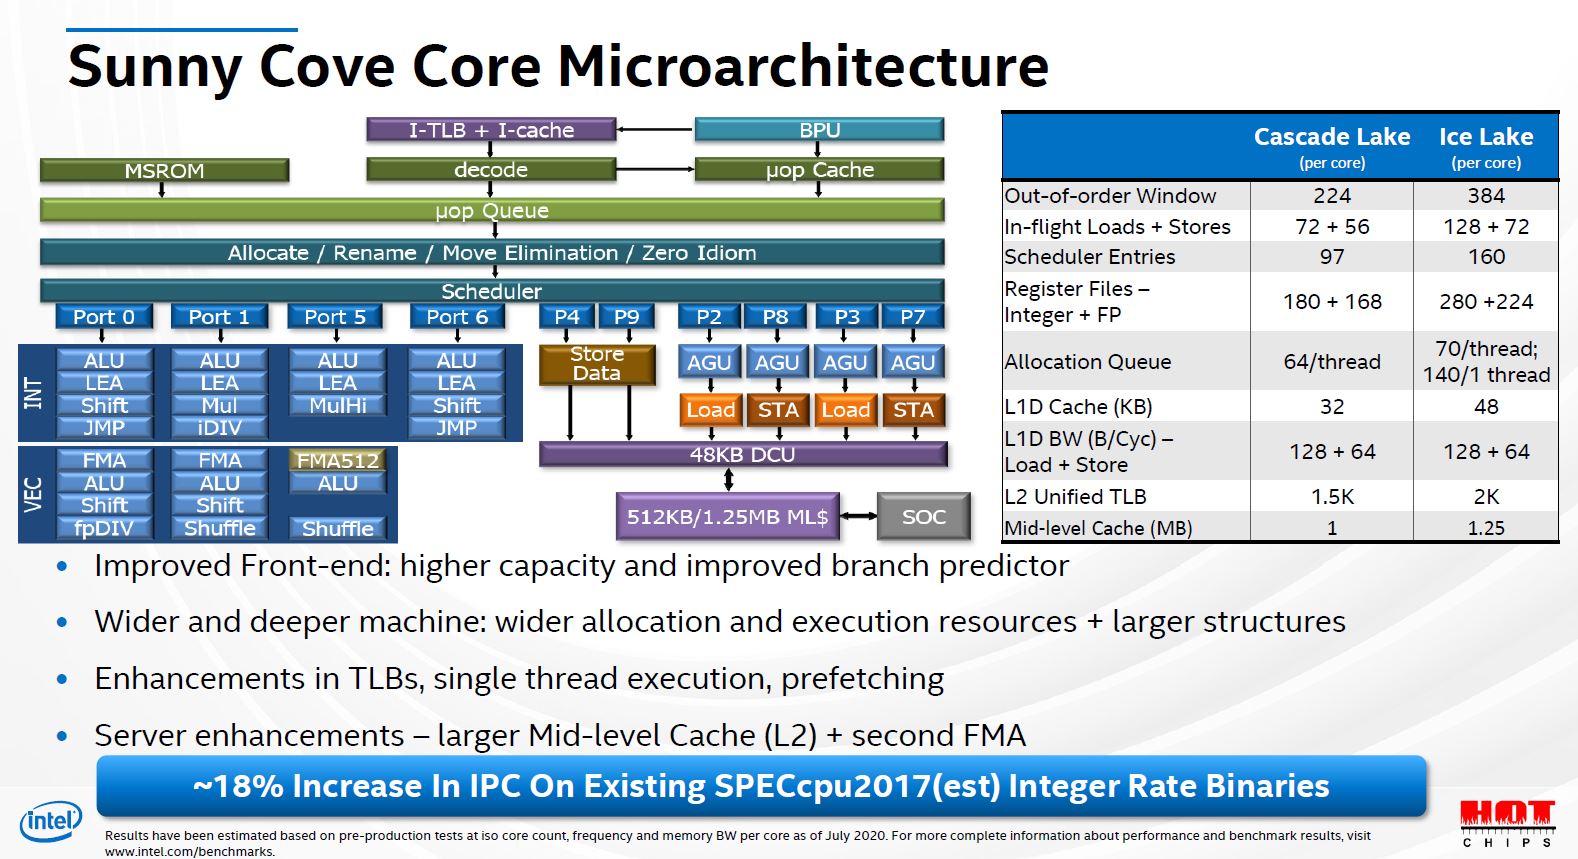 Intel’s Sunny Cove Core